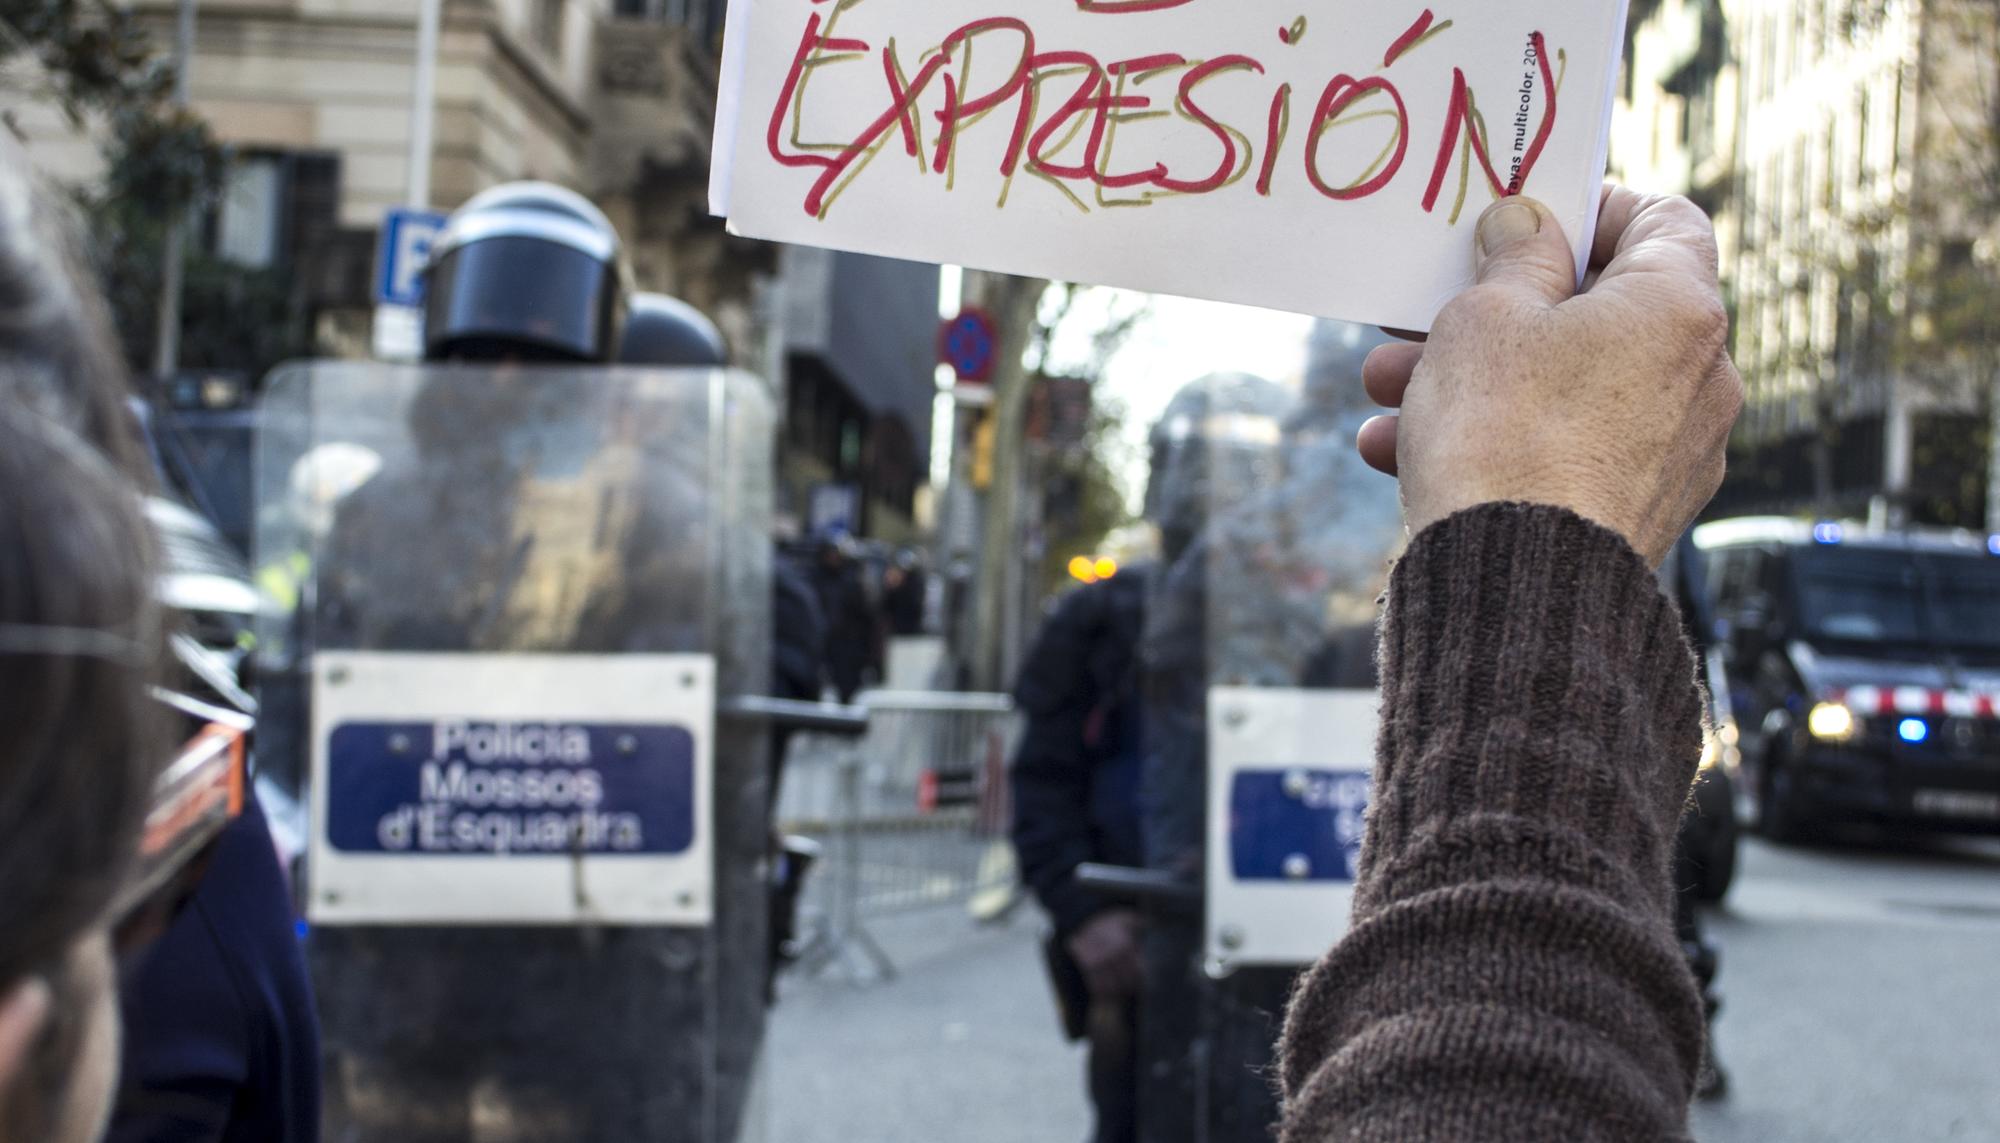 Ley Mordaza cartel por la libertad de expresion